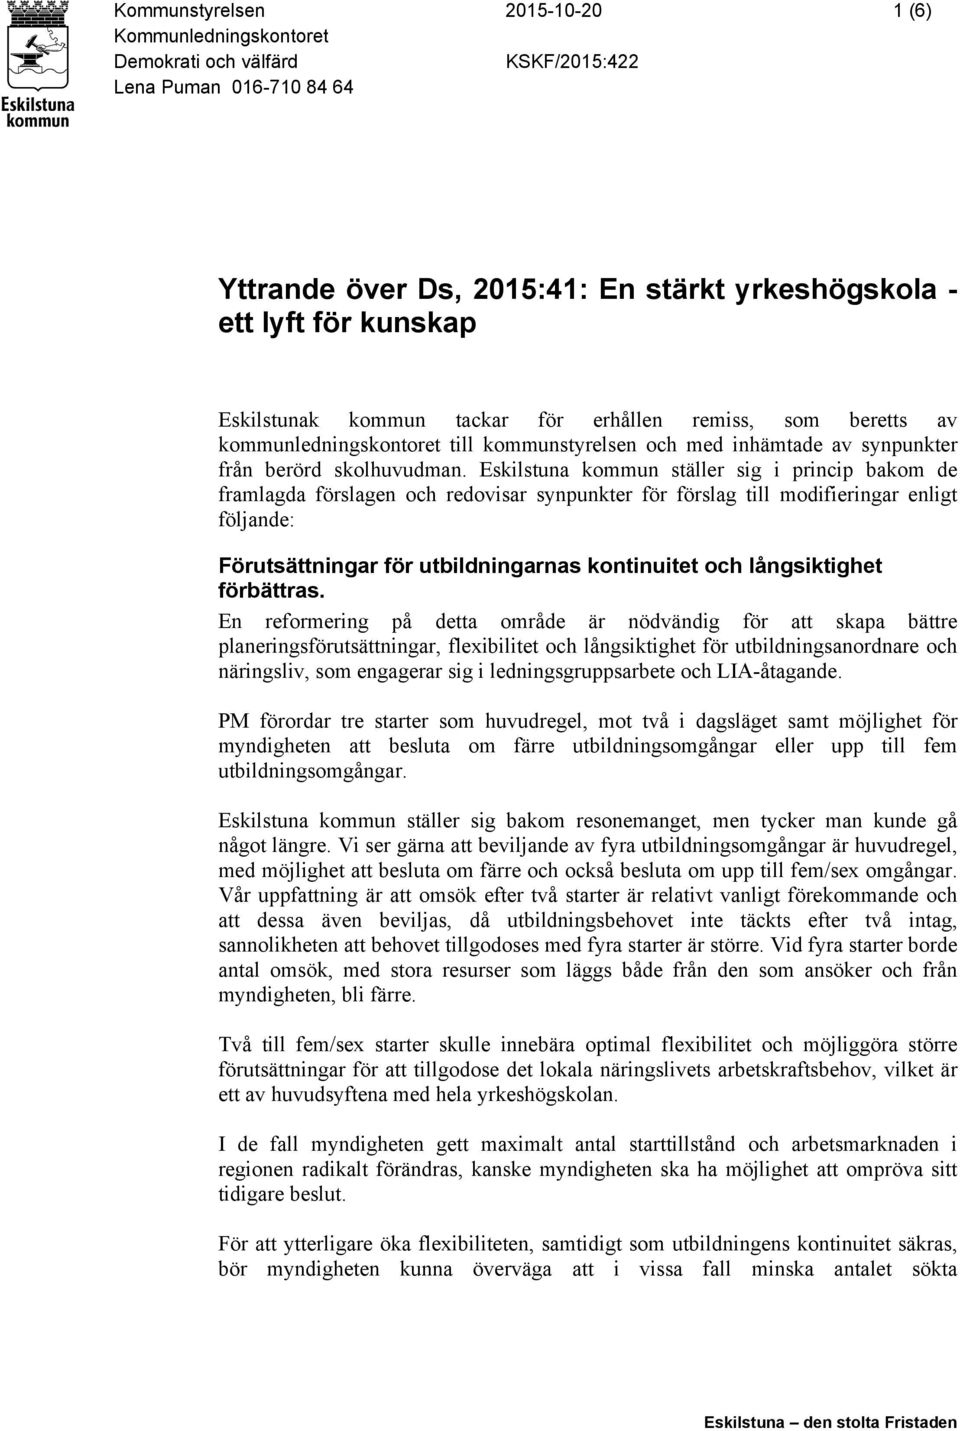 Eskilstuna kommun ställer sig i princip bakom de framlagda förslagen och redovisar synpunkter för förslag till modifieringar enligt följande: Förutsättningar för utbildningarnas kontinuitet och